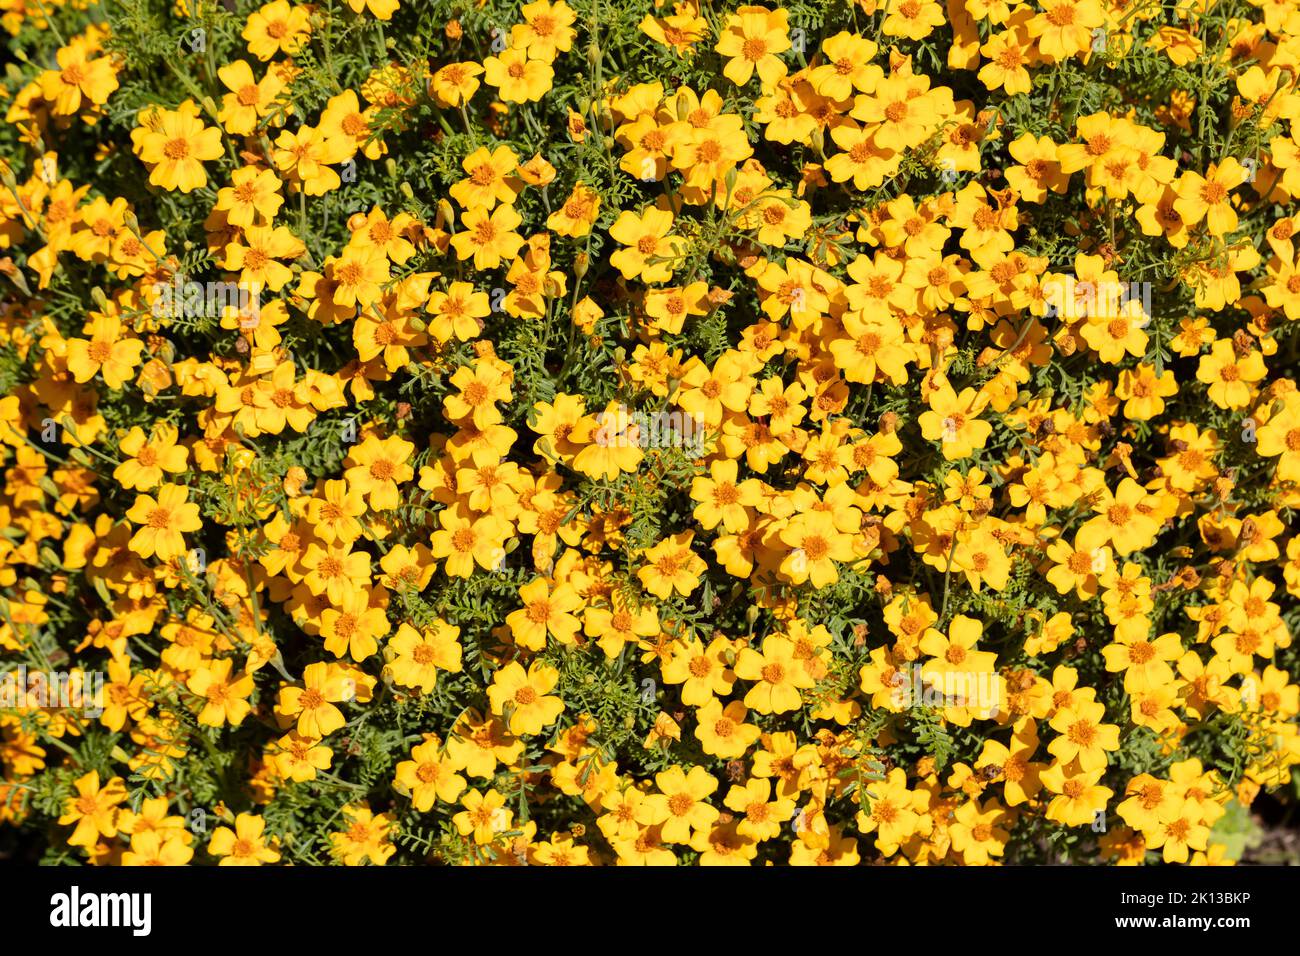 Tagetes tenuifolia, Slender leaf marigold flowers Stock Photo